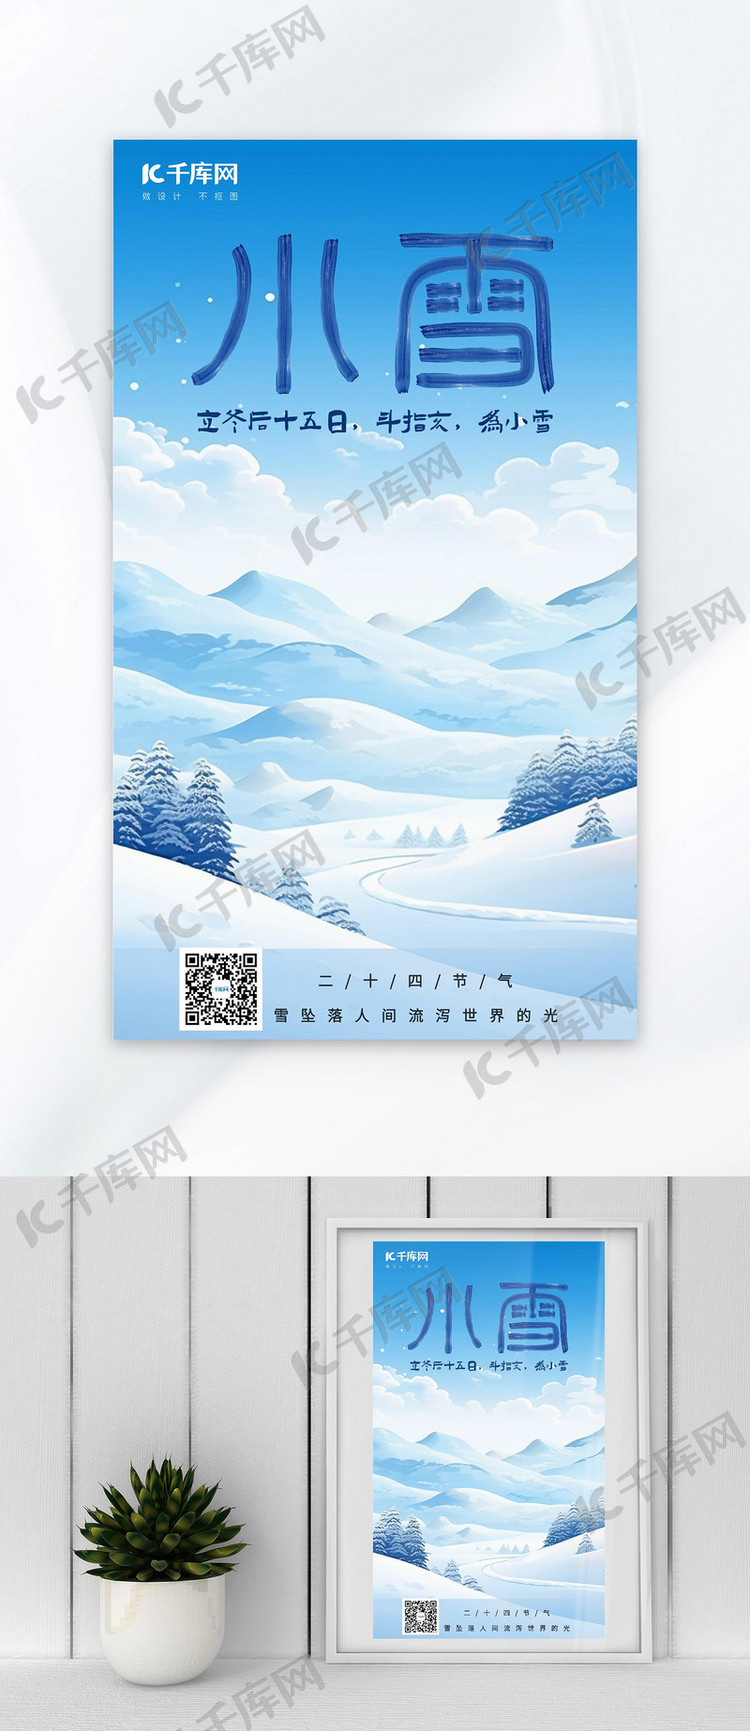 小雪冬季小雪蓝色手绘AIGC广告宣传海报